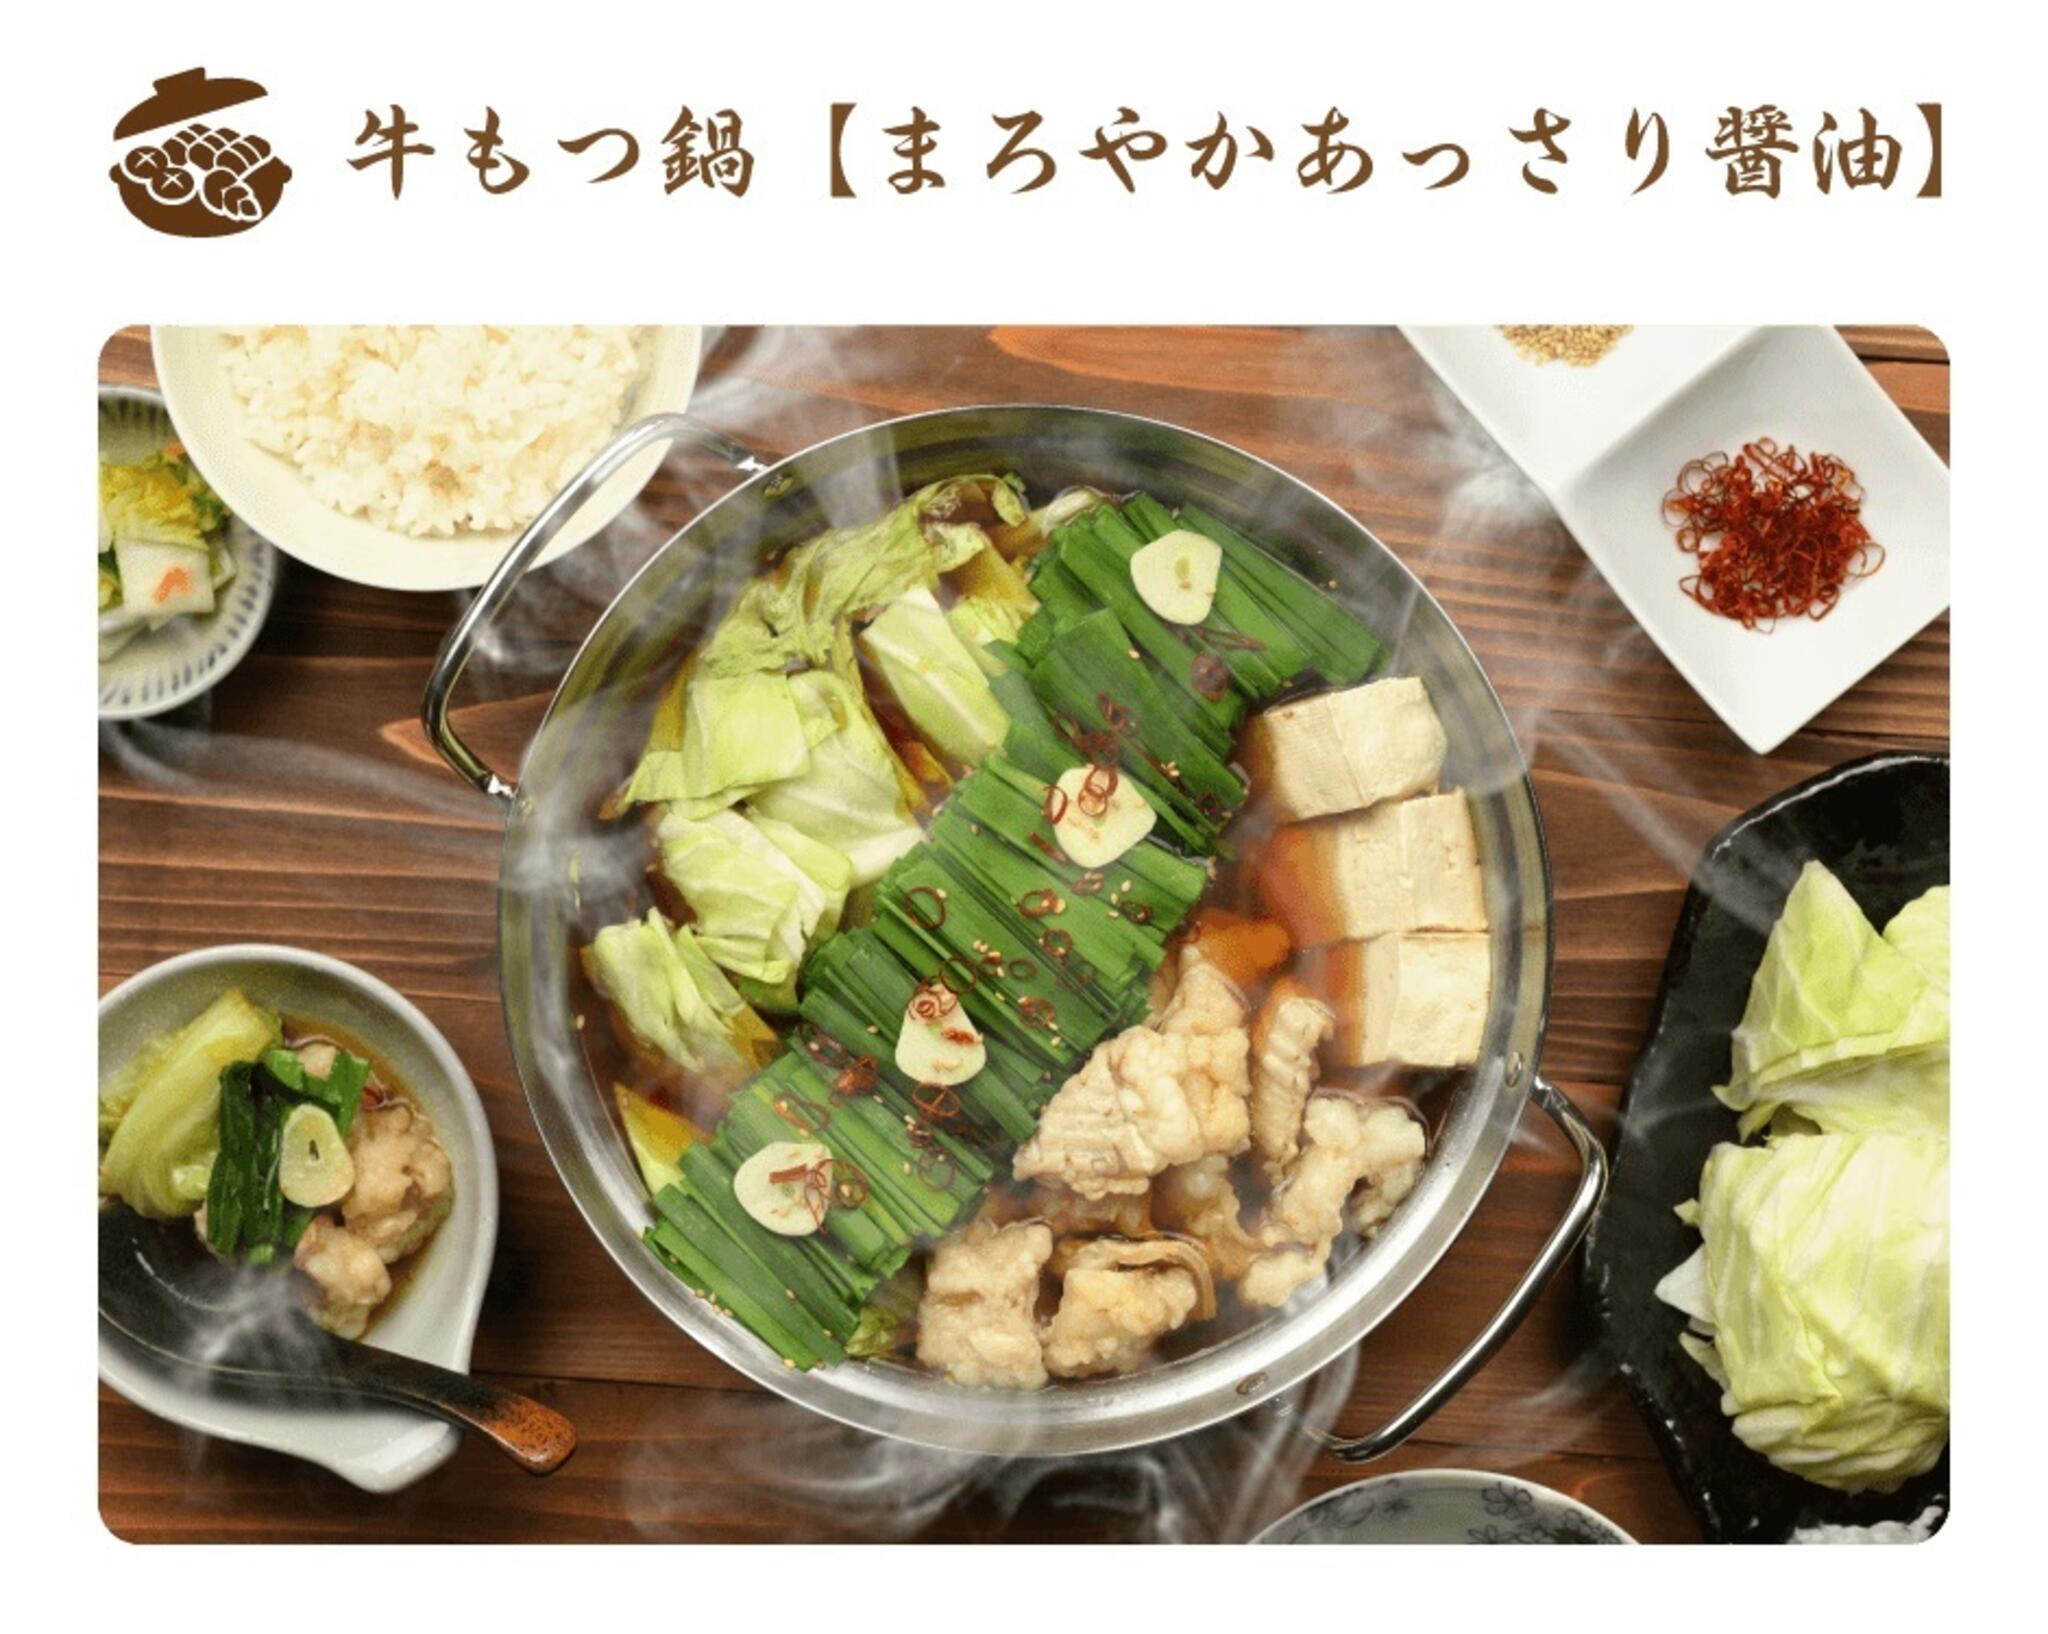 焼肉冷麺やまなか家 上田バイパス店からのお知らせ(🍲やまなか家通販限定❕鍋特集🍲)に関する写真